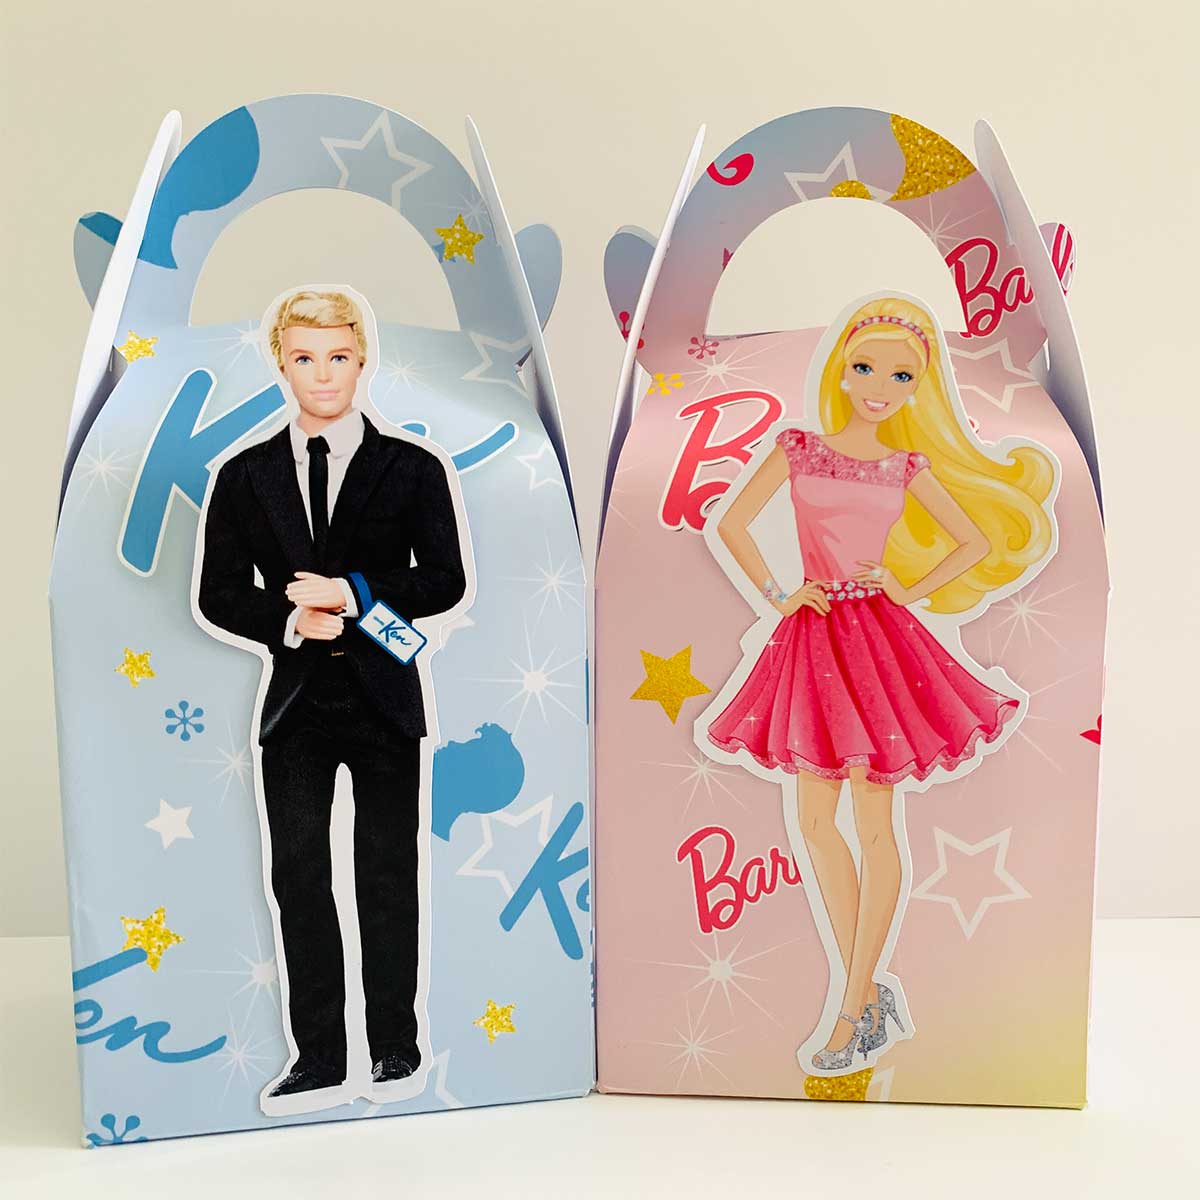 Barbie & Ken Treat Boxes